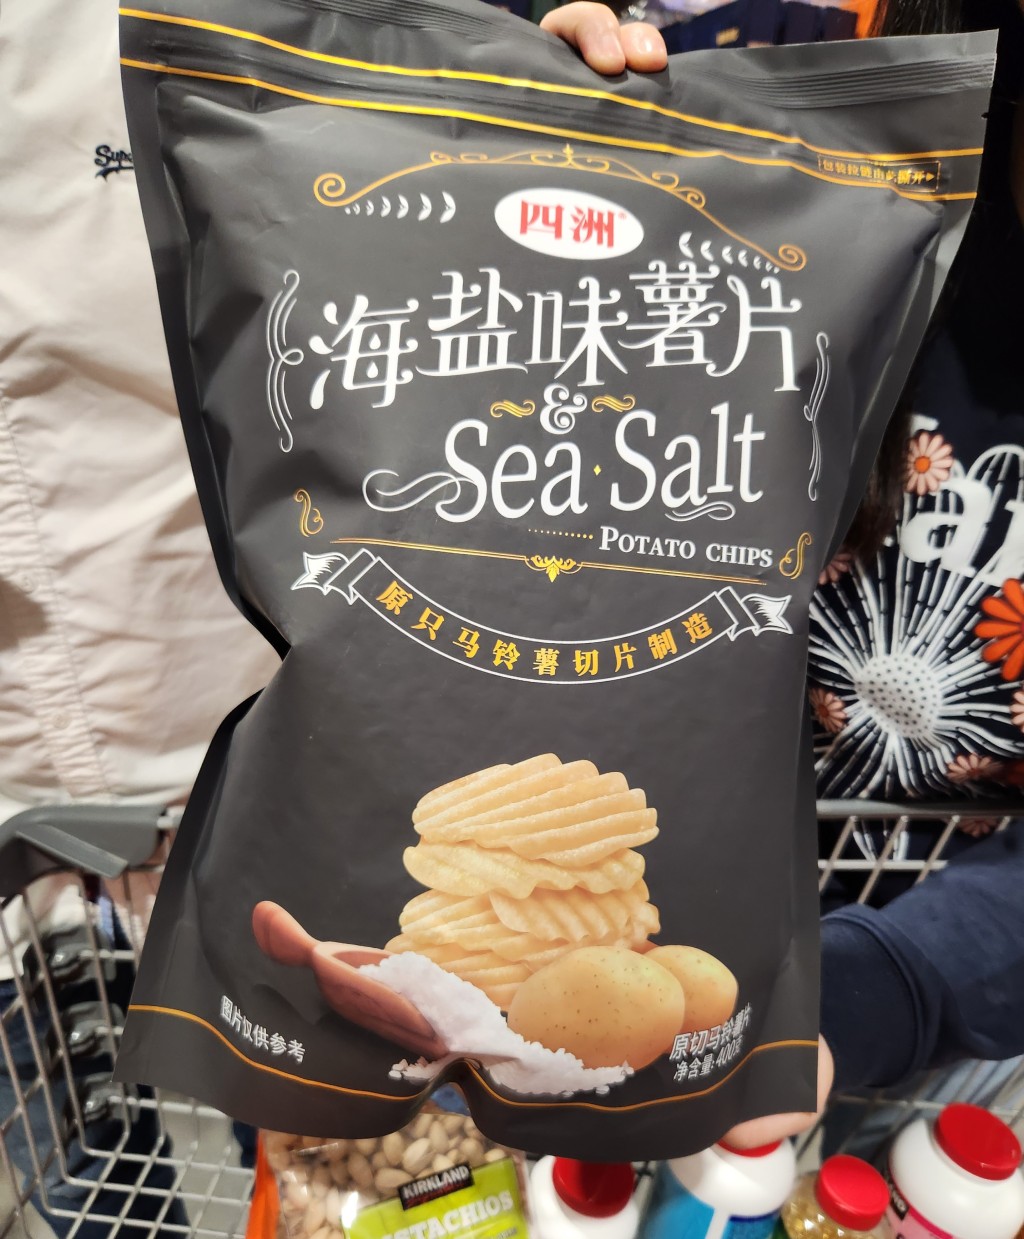 海盐味薯片仅售人民币29.9。资料图片